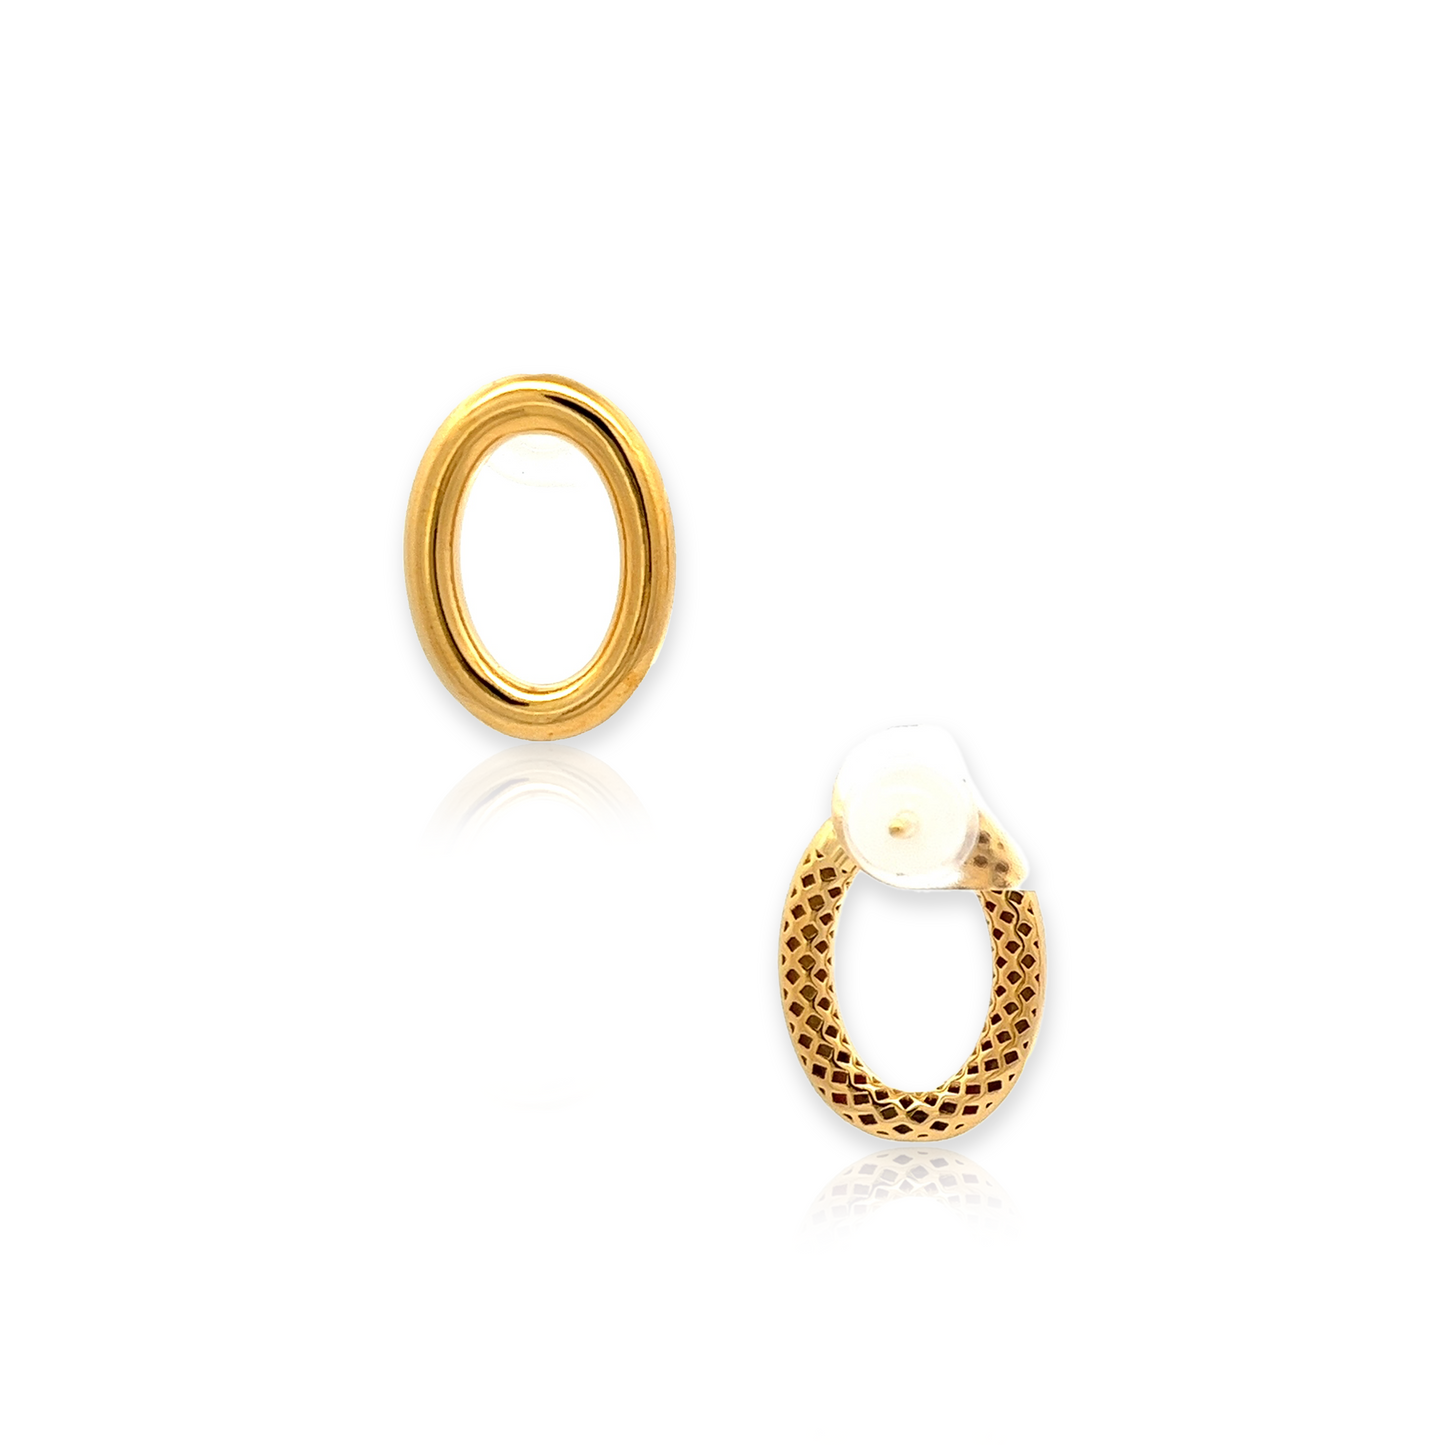 Elizabeth Earrings in Gold